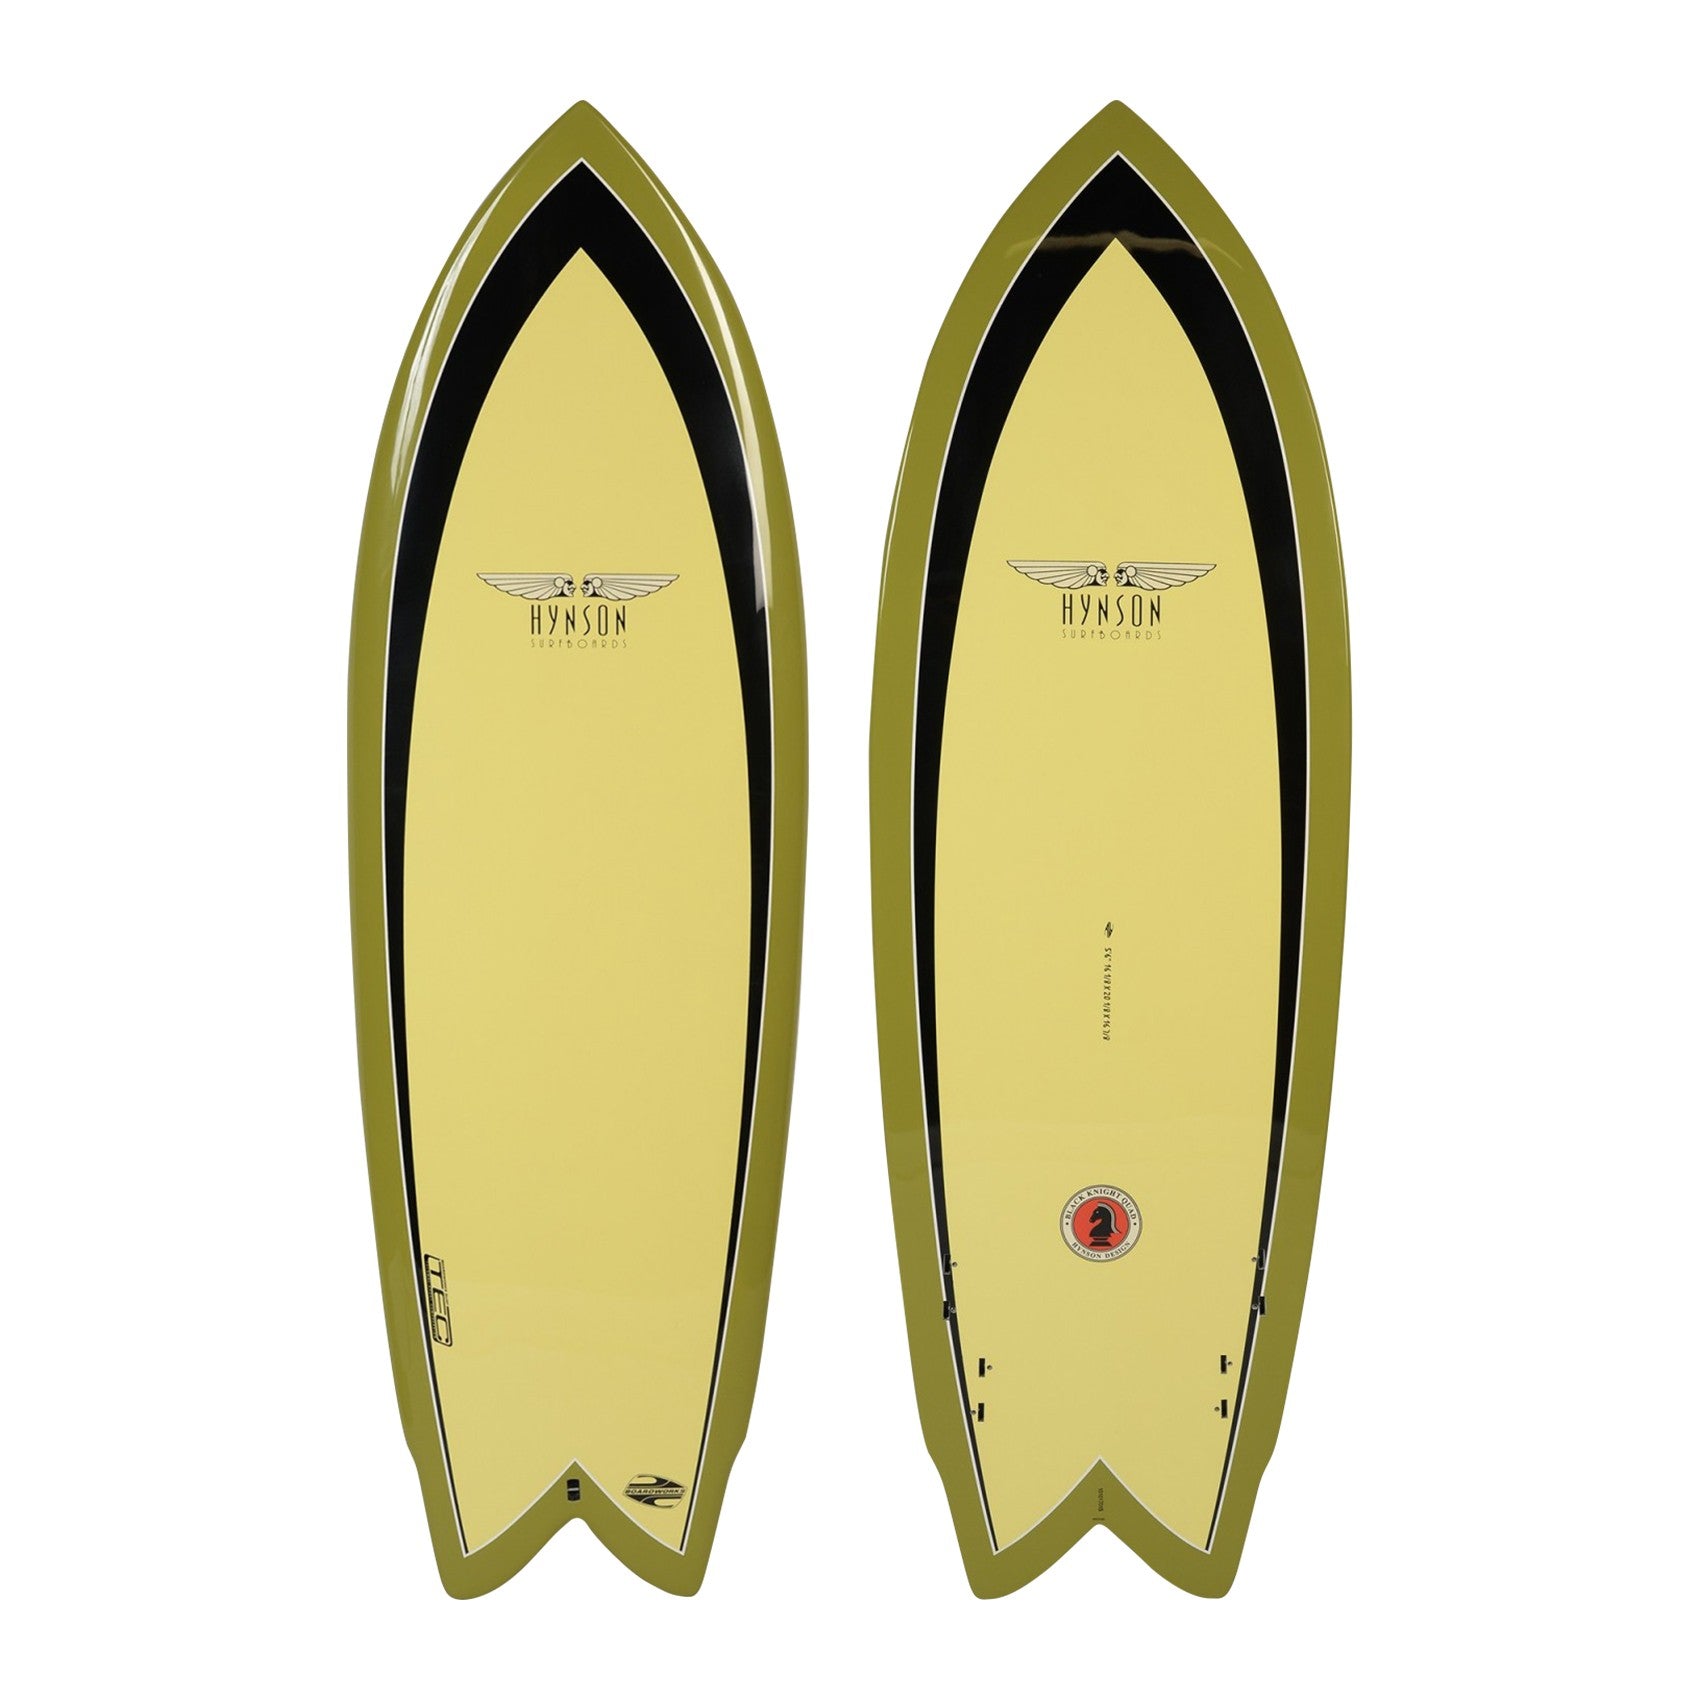 BOARDWORKS - Planche de Surf Hynson Black Knight Quad yellow / green (epoxy)